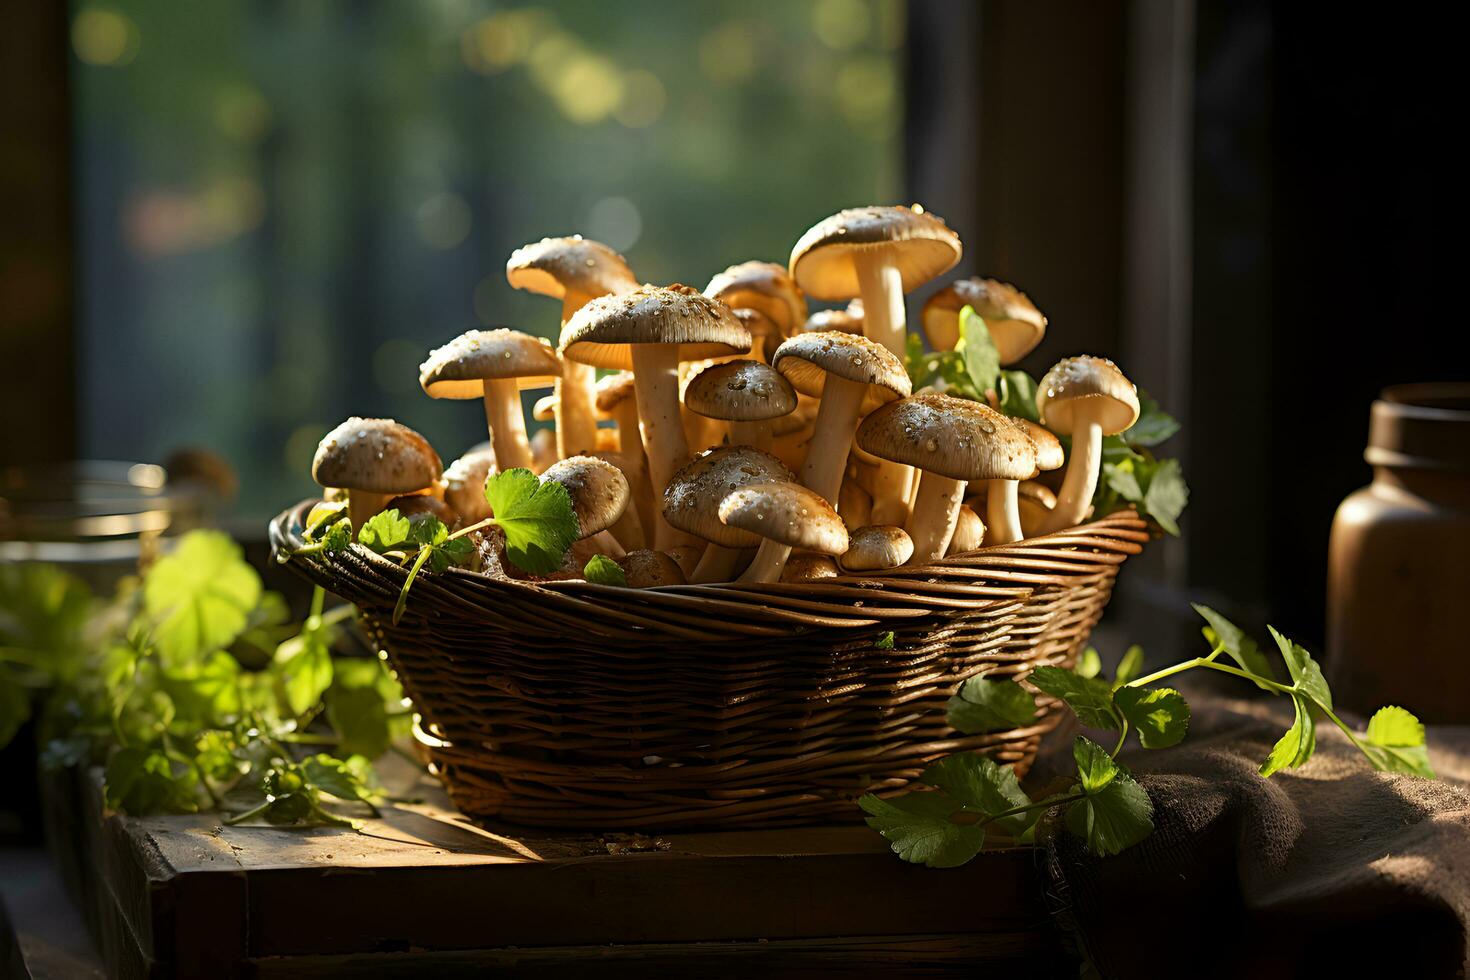 fraîchement choisi champignons dans une panier sur le l'automne, tomber forêt Contexte. photo